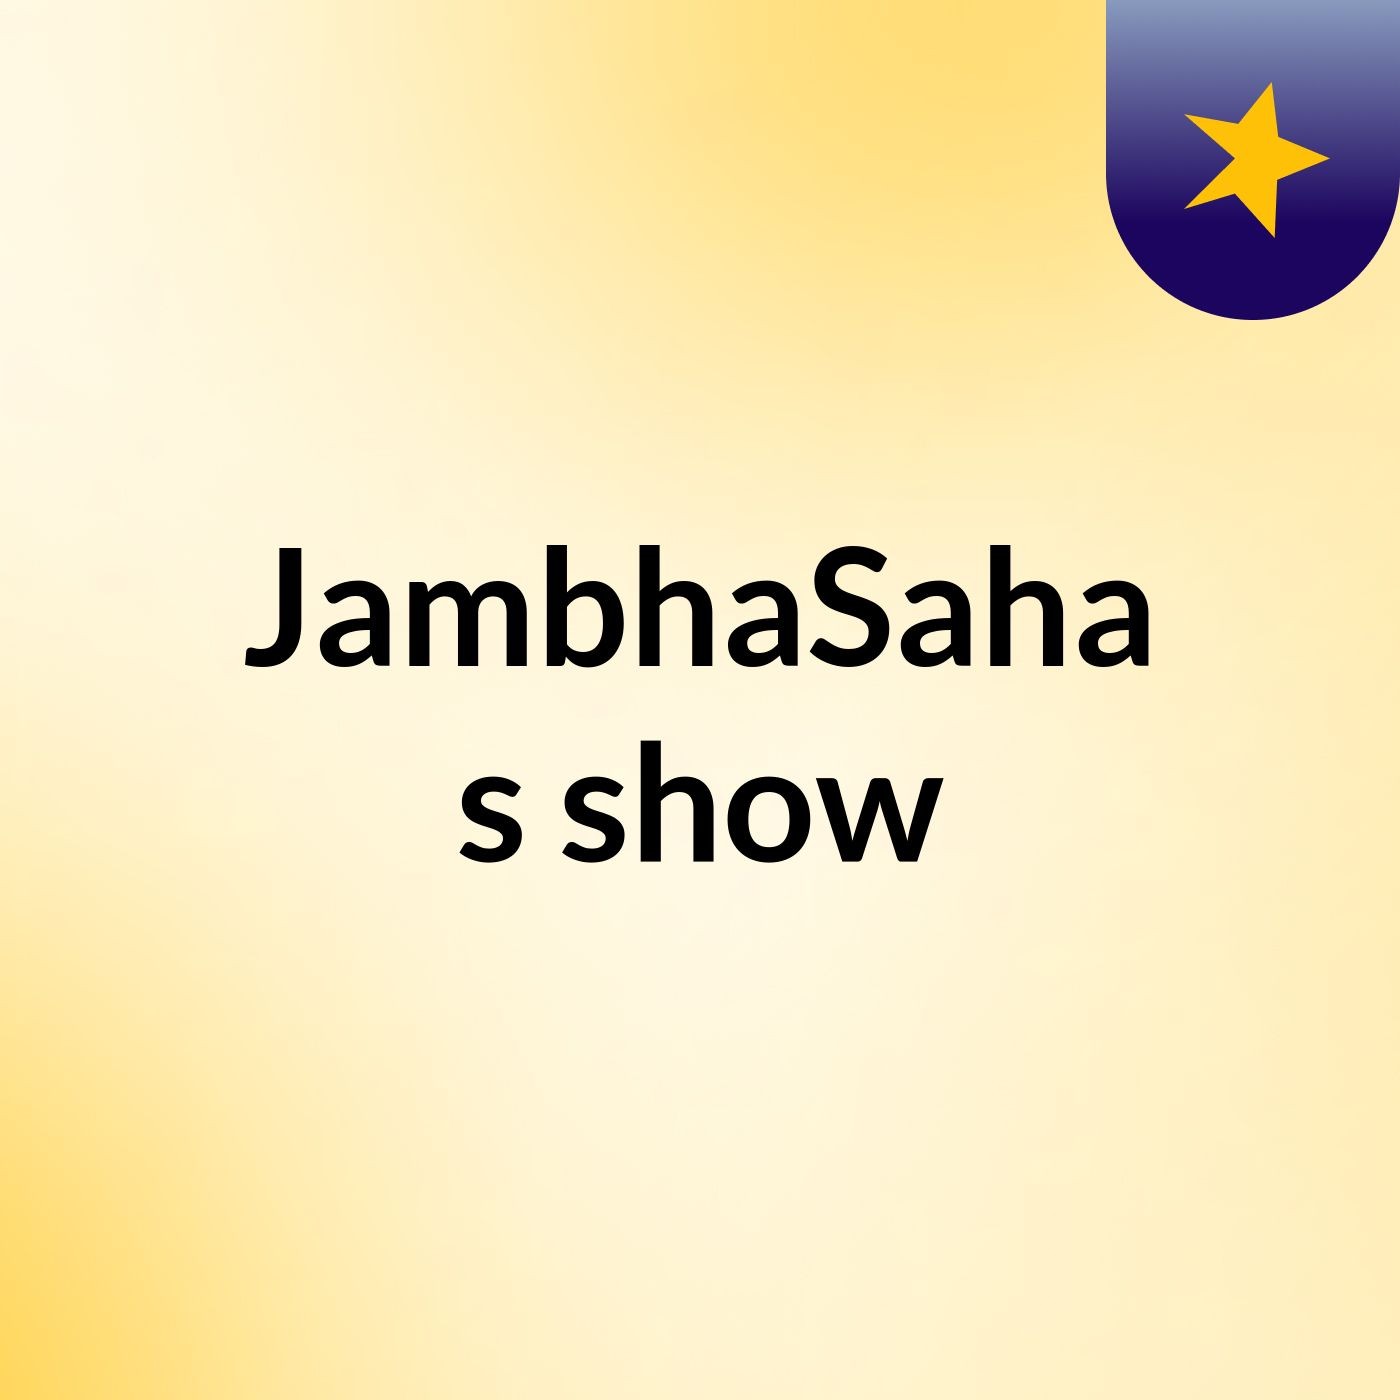 JambhaSaha's show